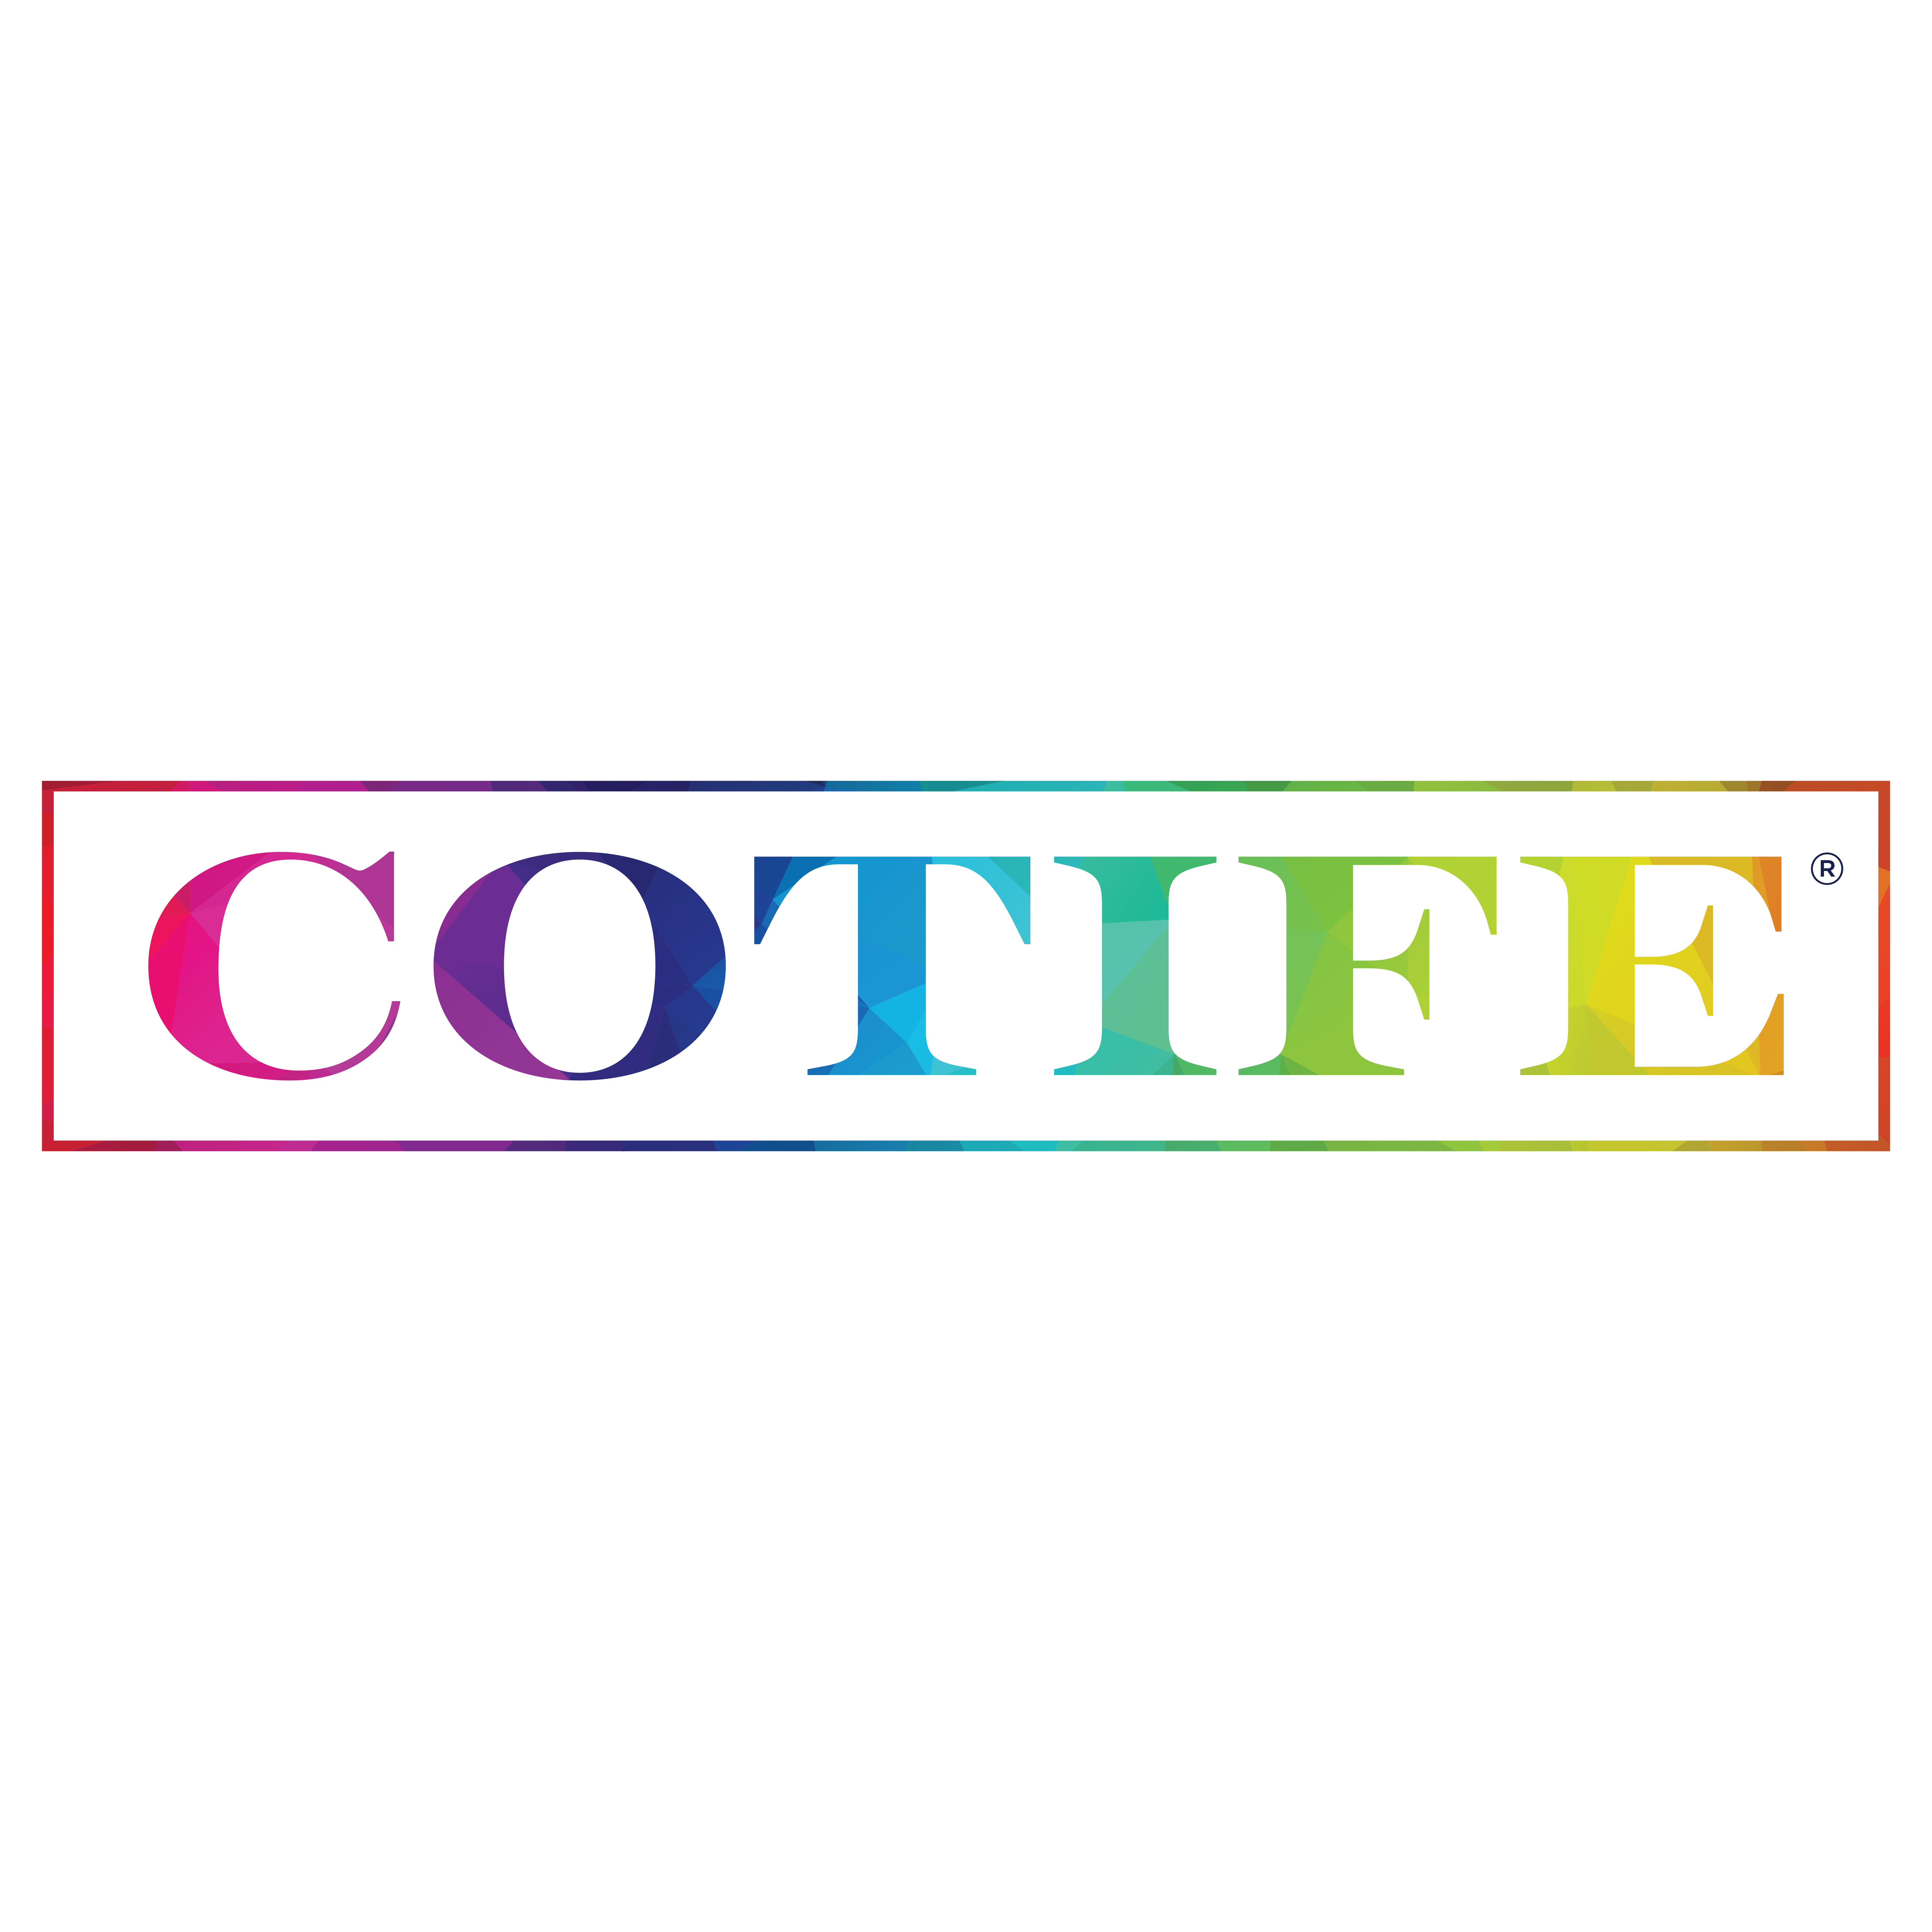 Cotife logo